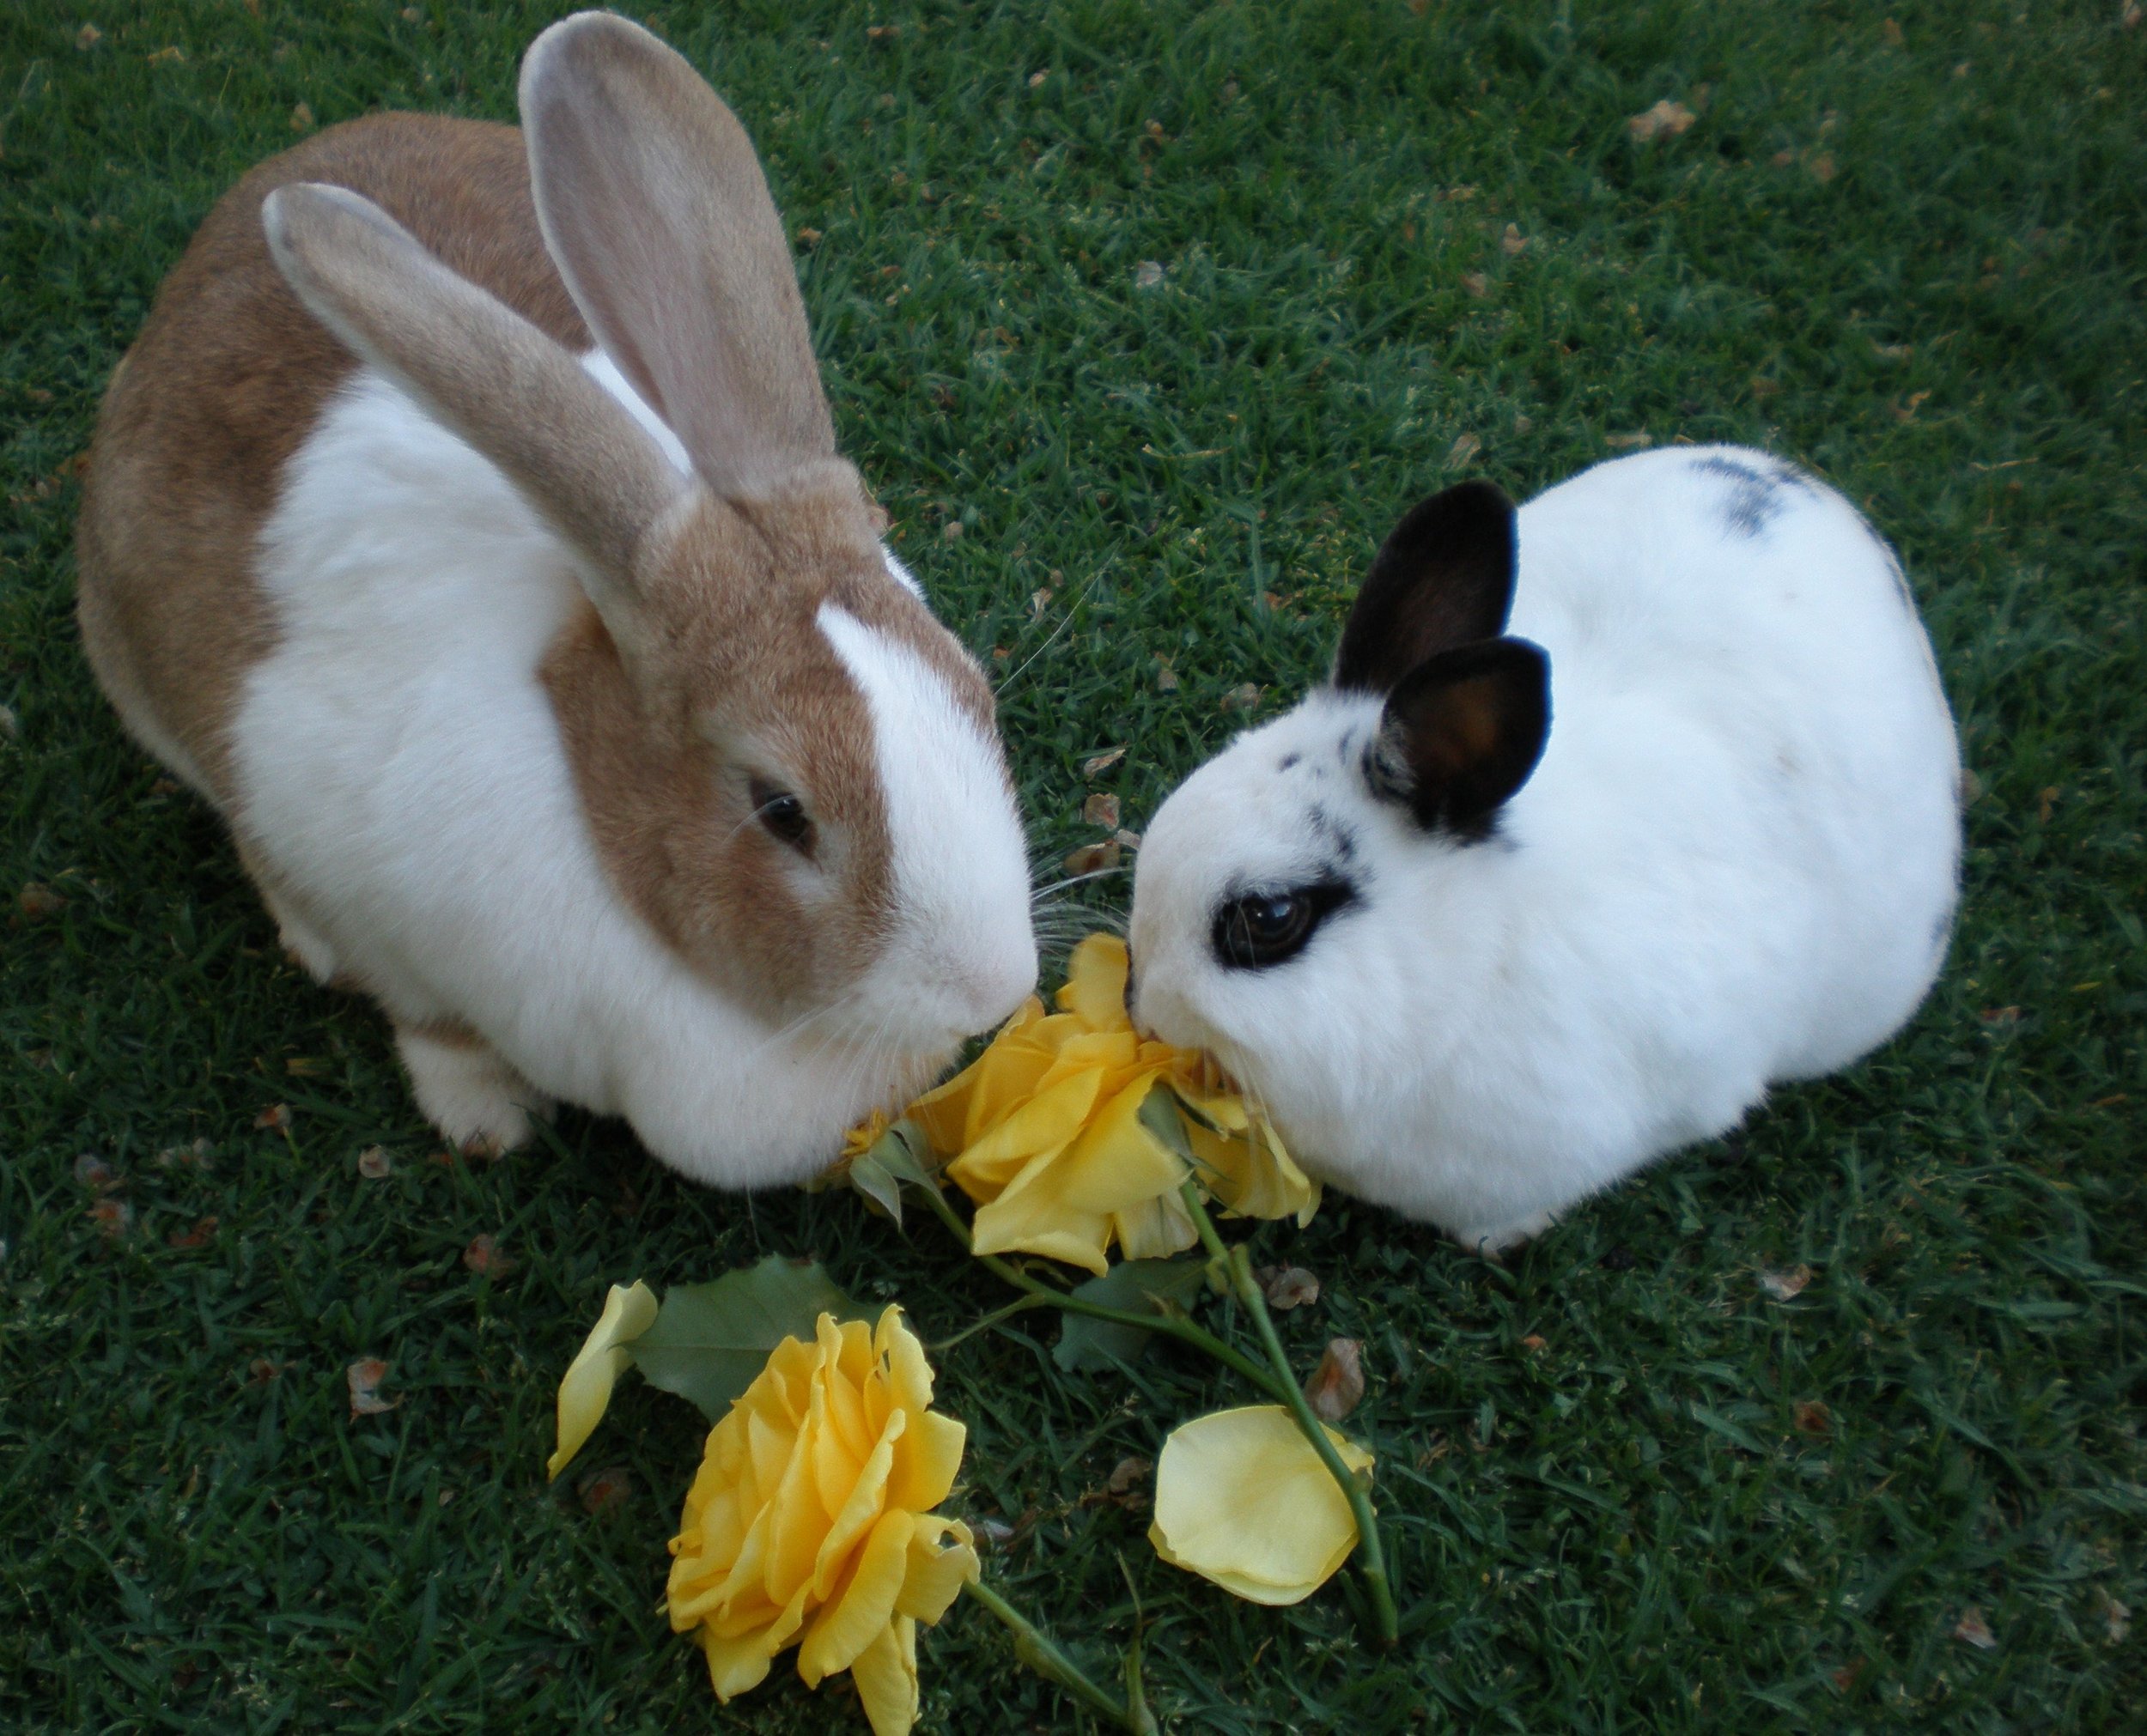 Bunnies Share a Flowery Treat